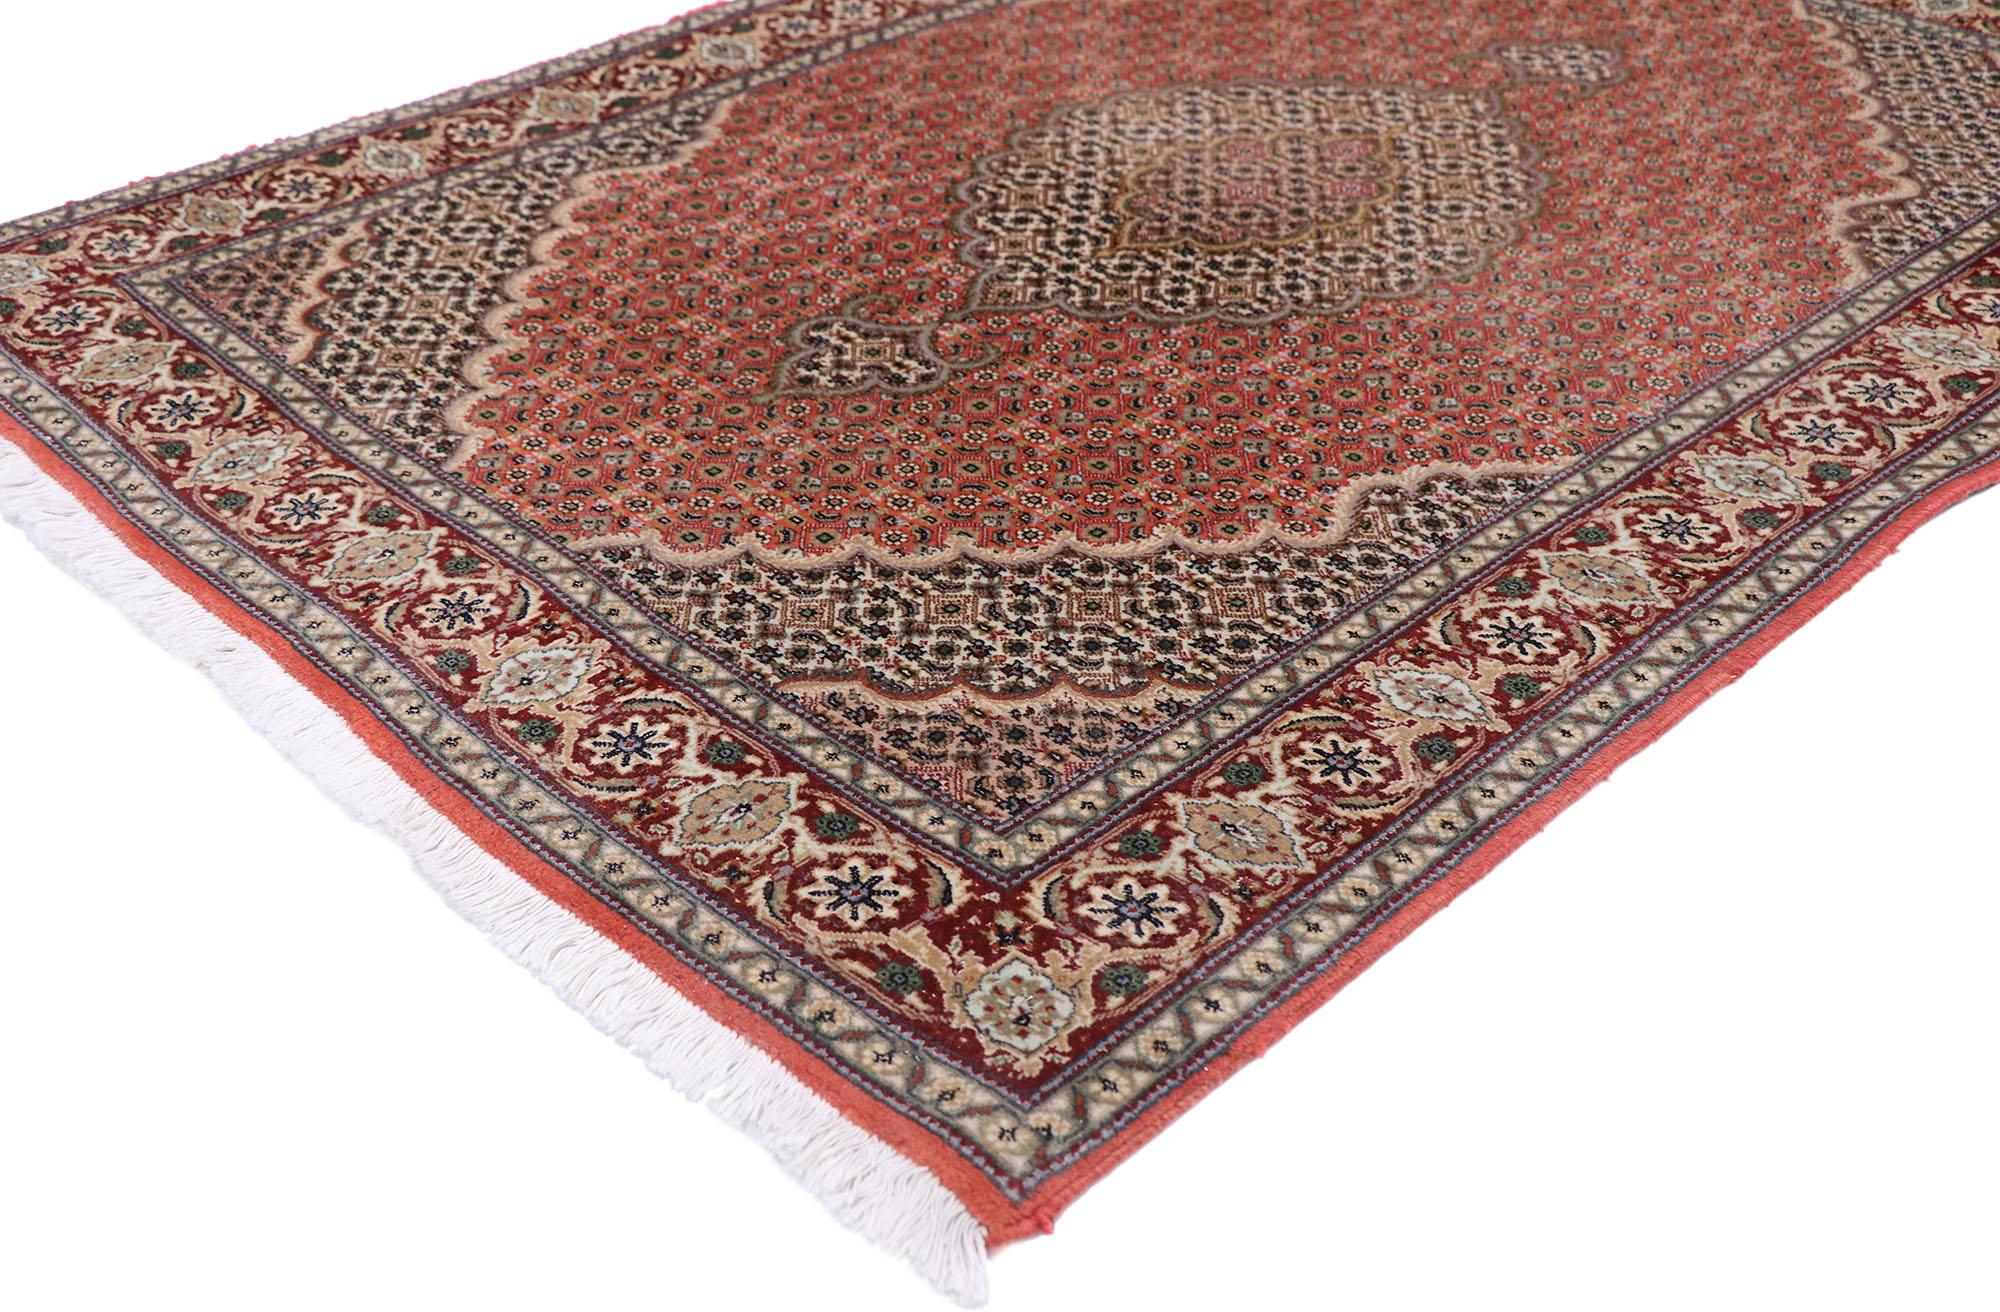 77794 Vintage Persian Mahi Tabriz Teppich mit neoklassischen viktorianischen Stil 03'04 x 04'09. mit kunstvollen Details und ausgewogene Symmetrie, ist diese handgeknüpfte Wolle Vintage persischen Mahi Täbris Teppich bereit, zu beeindrucken. Das